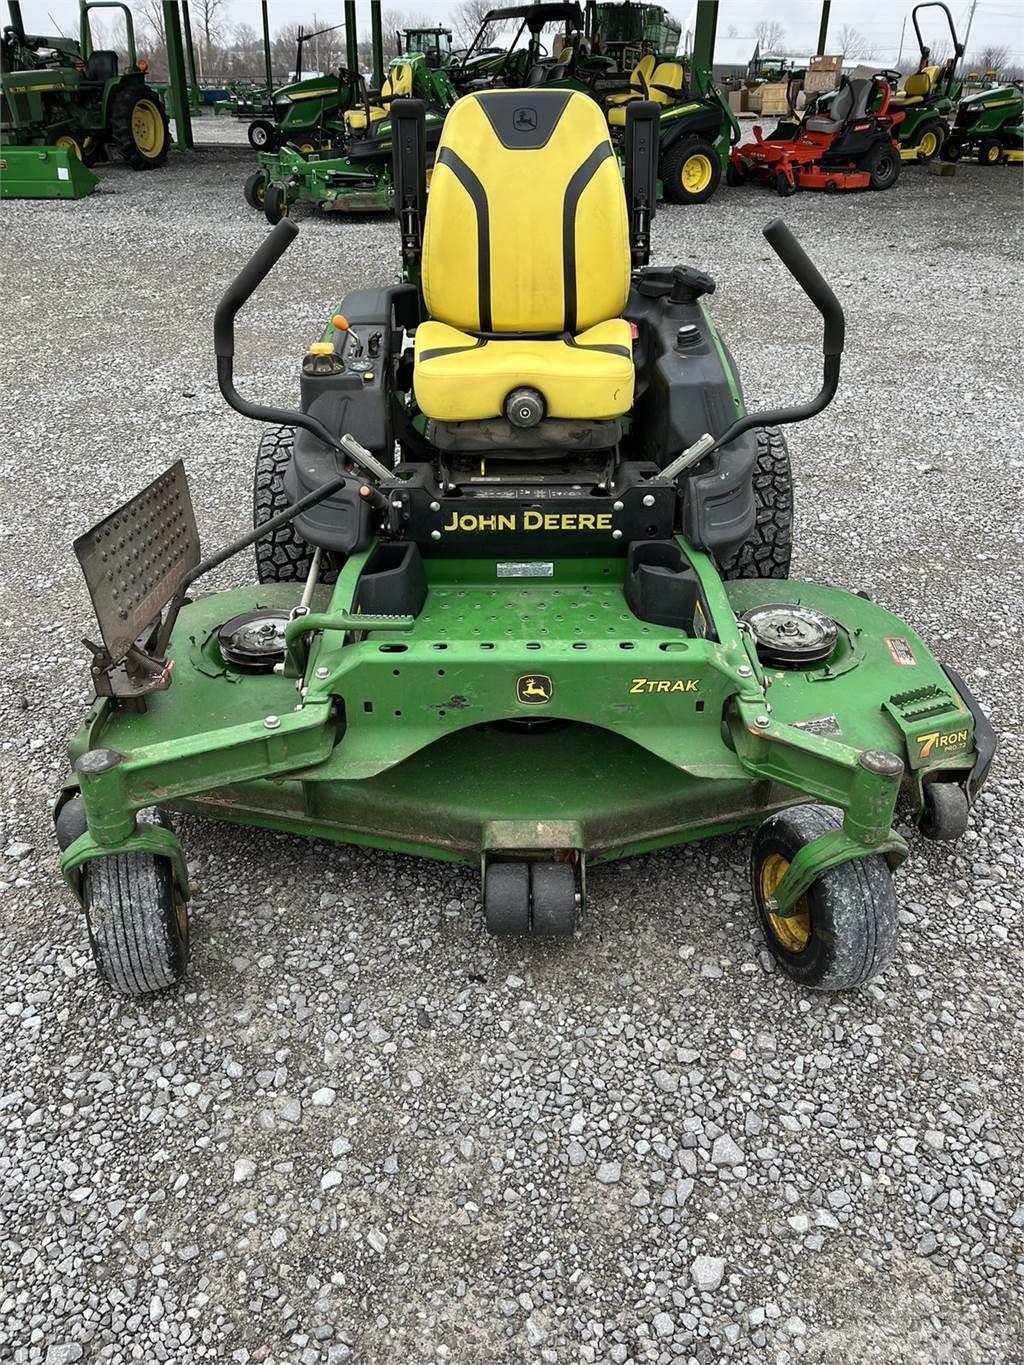 John Deere Z960M Sıfır dönüşlü çim biçme makineleri